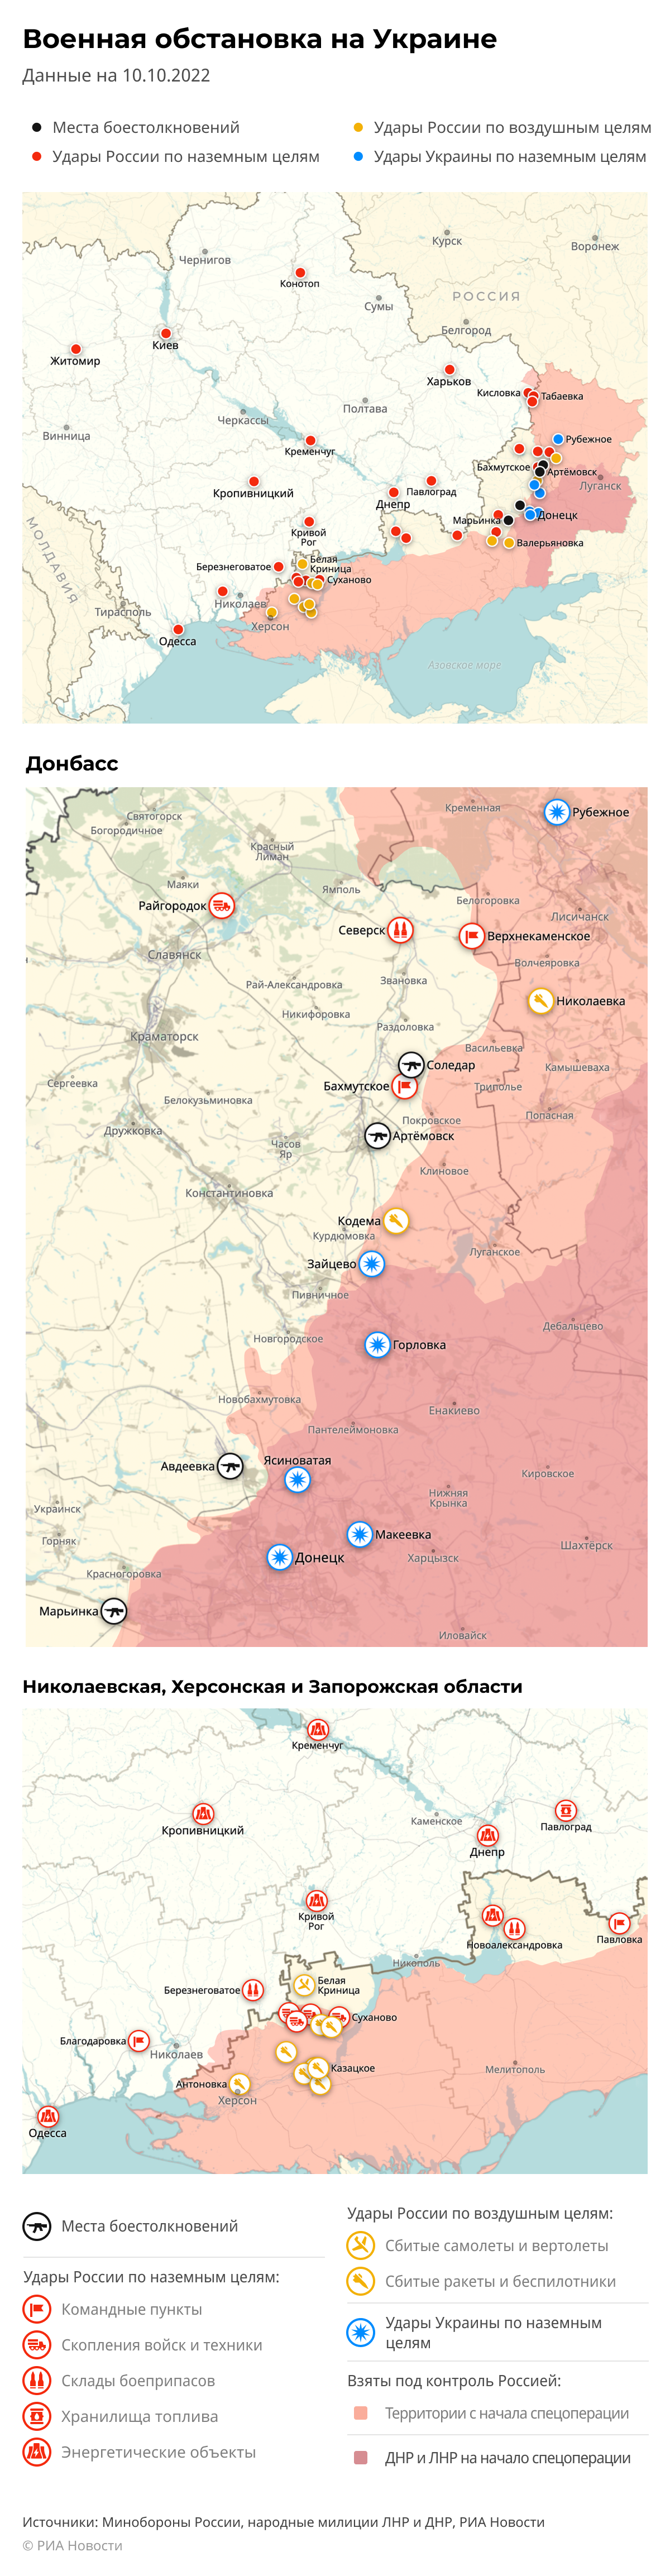 Карта спецоперации Вооруженных сил России на Украине на 10.10.2022